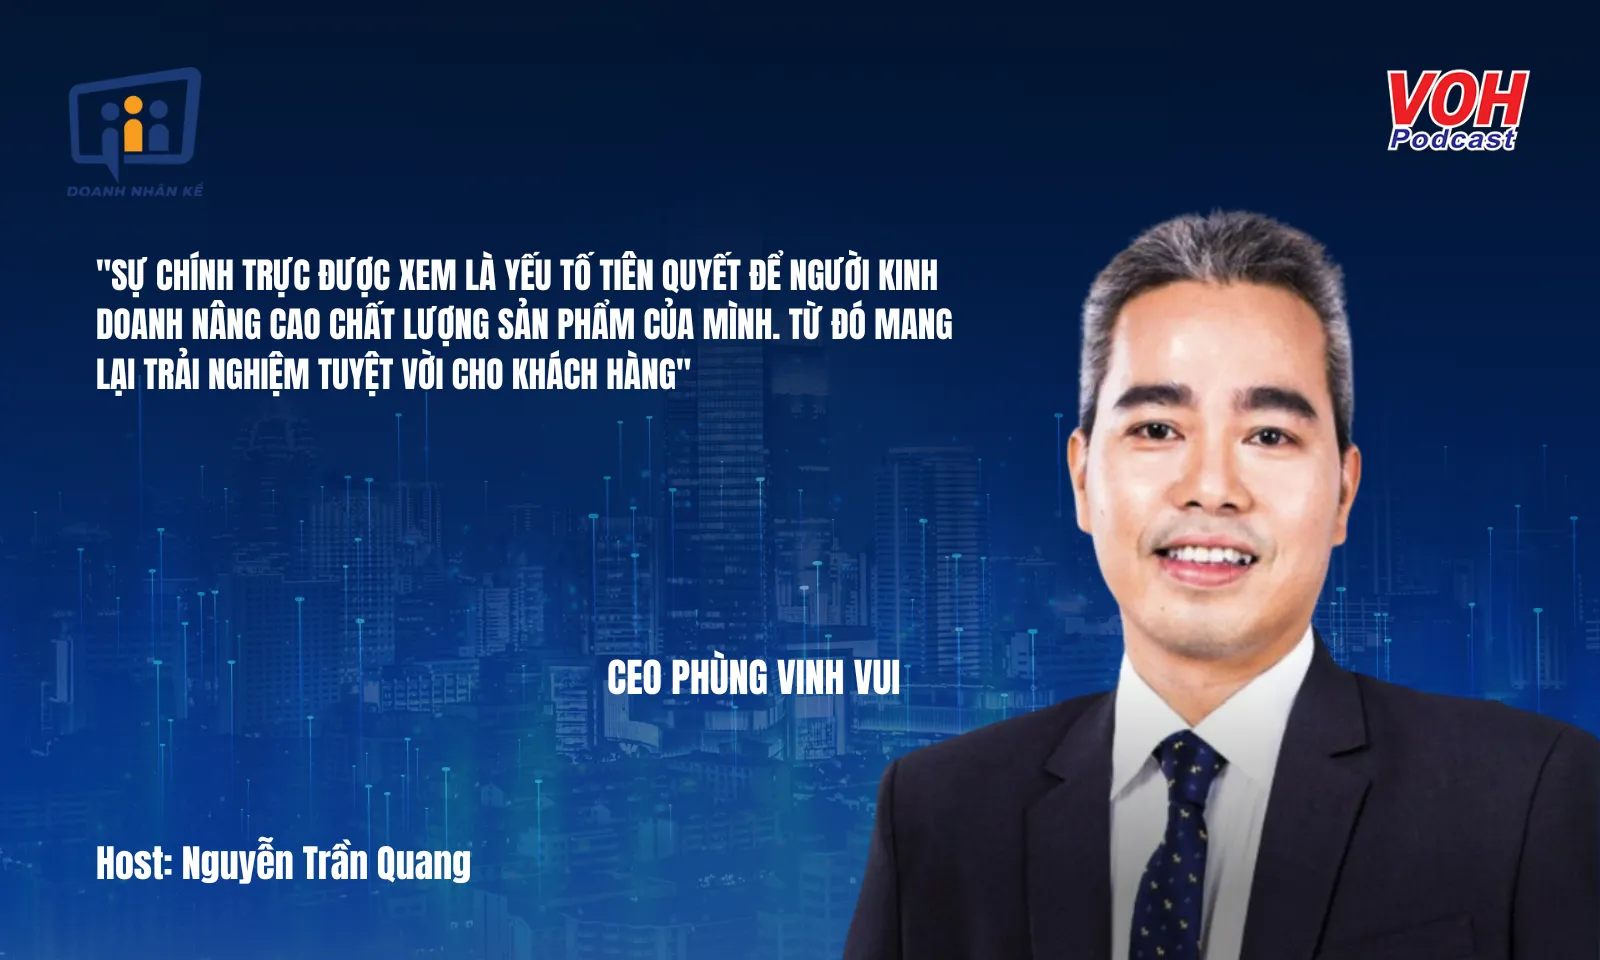 CEO Phùng Vinh Vui: Bí kíp chinh phục thị trường 